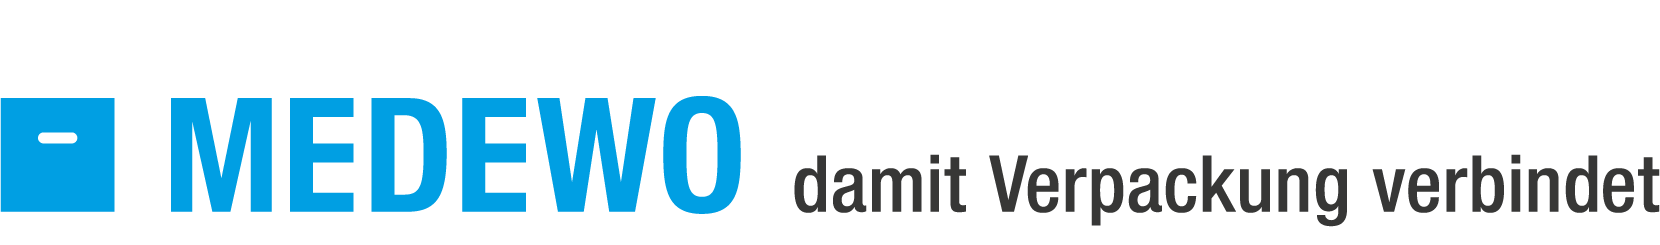 medewo-logo